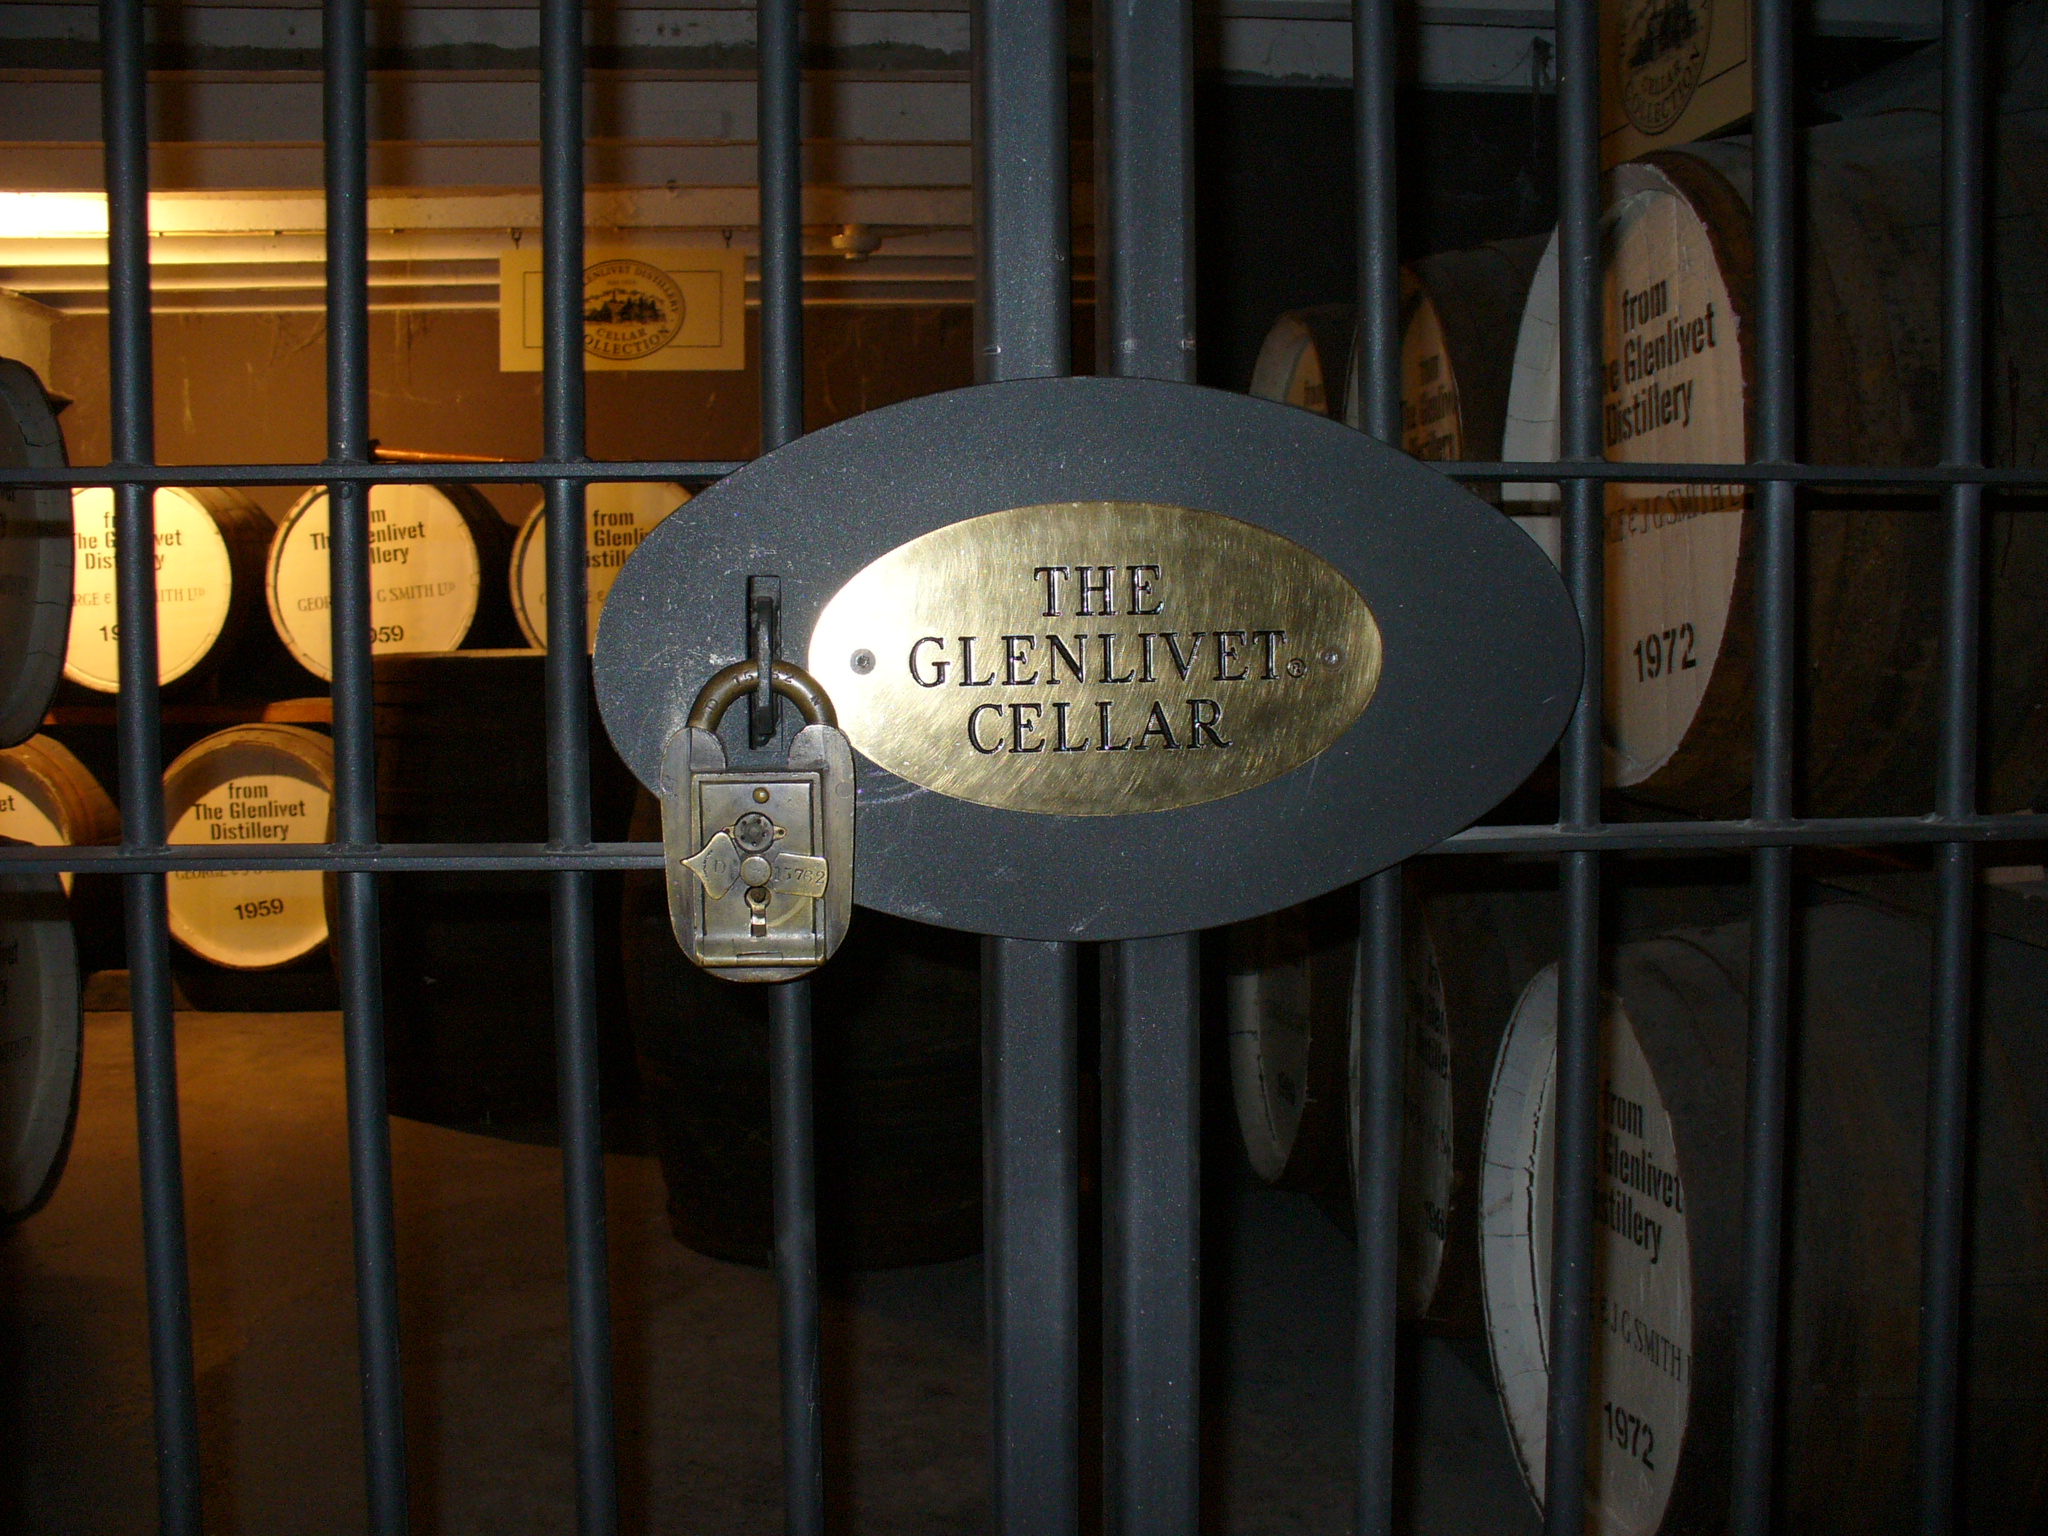 The Glenlivet Cellar